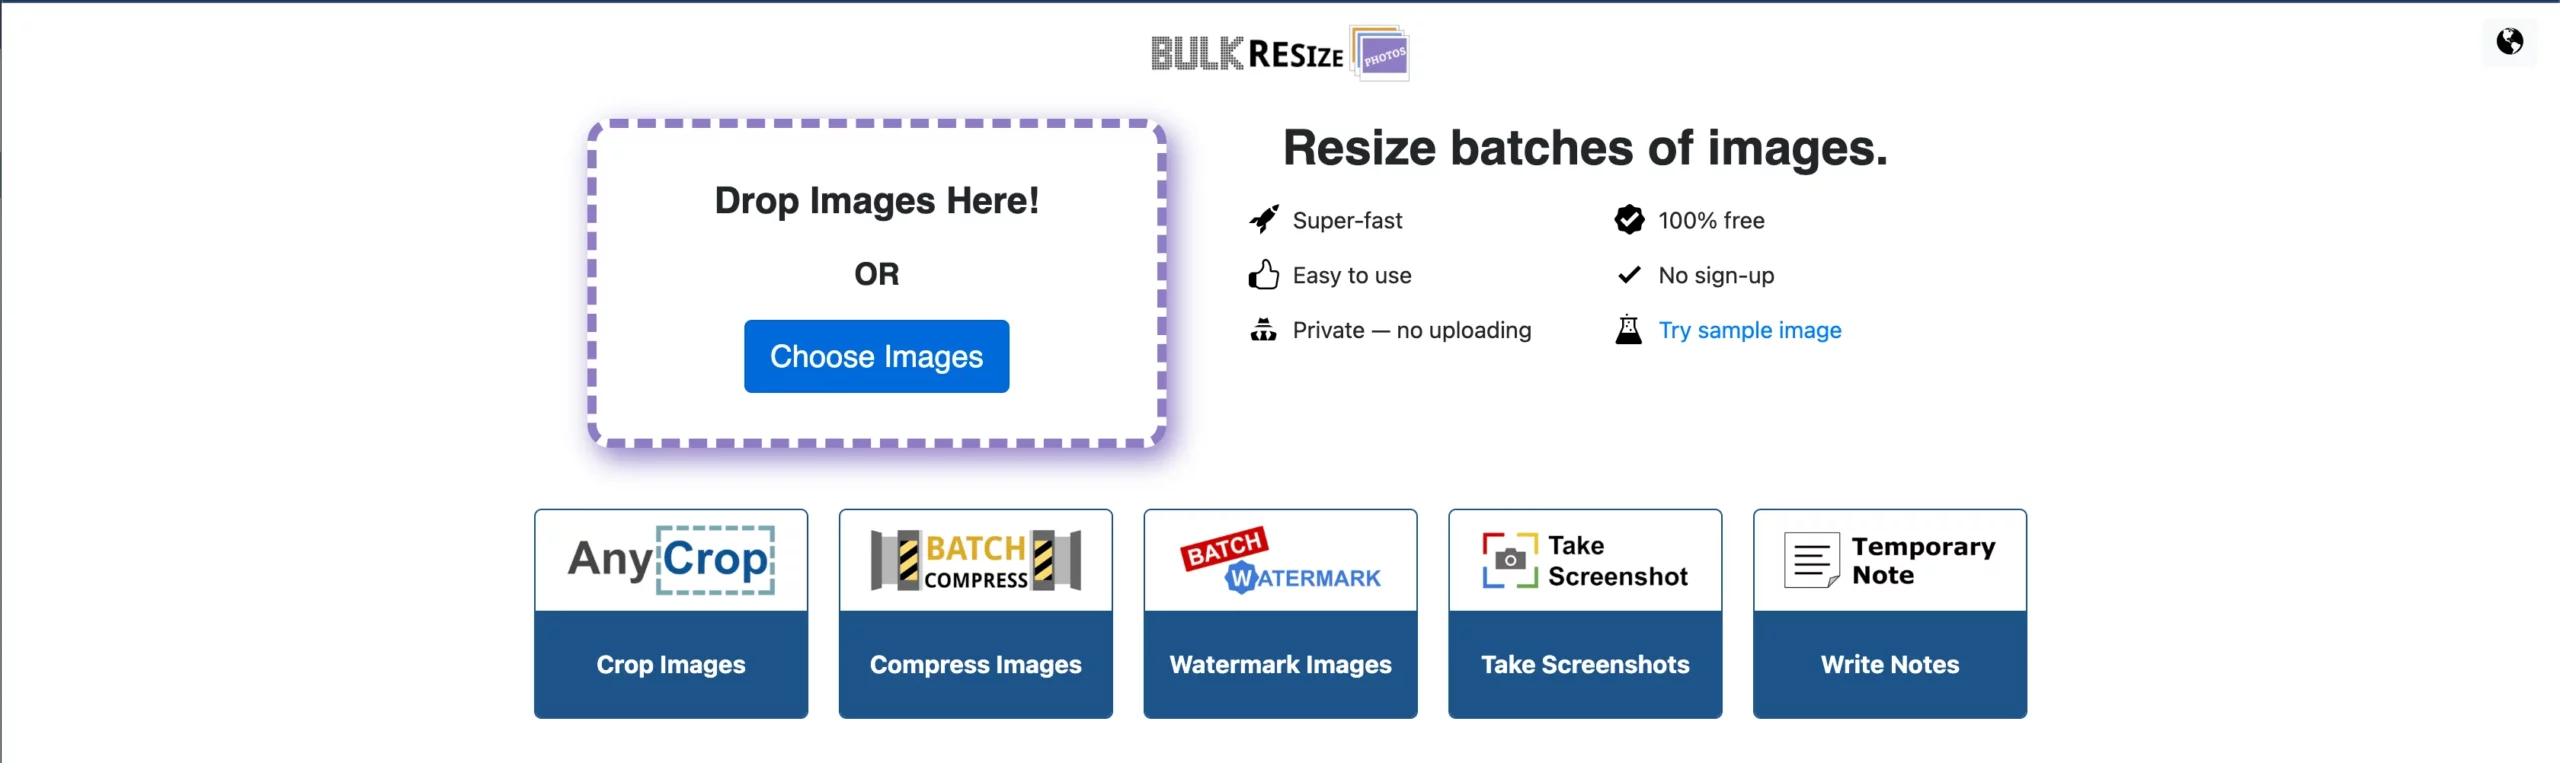 Bulk resize - Upload your image